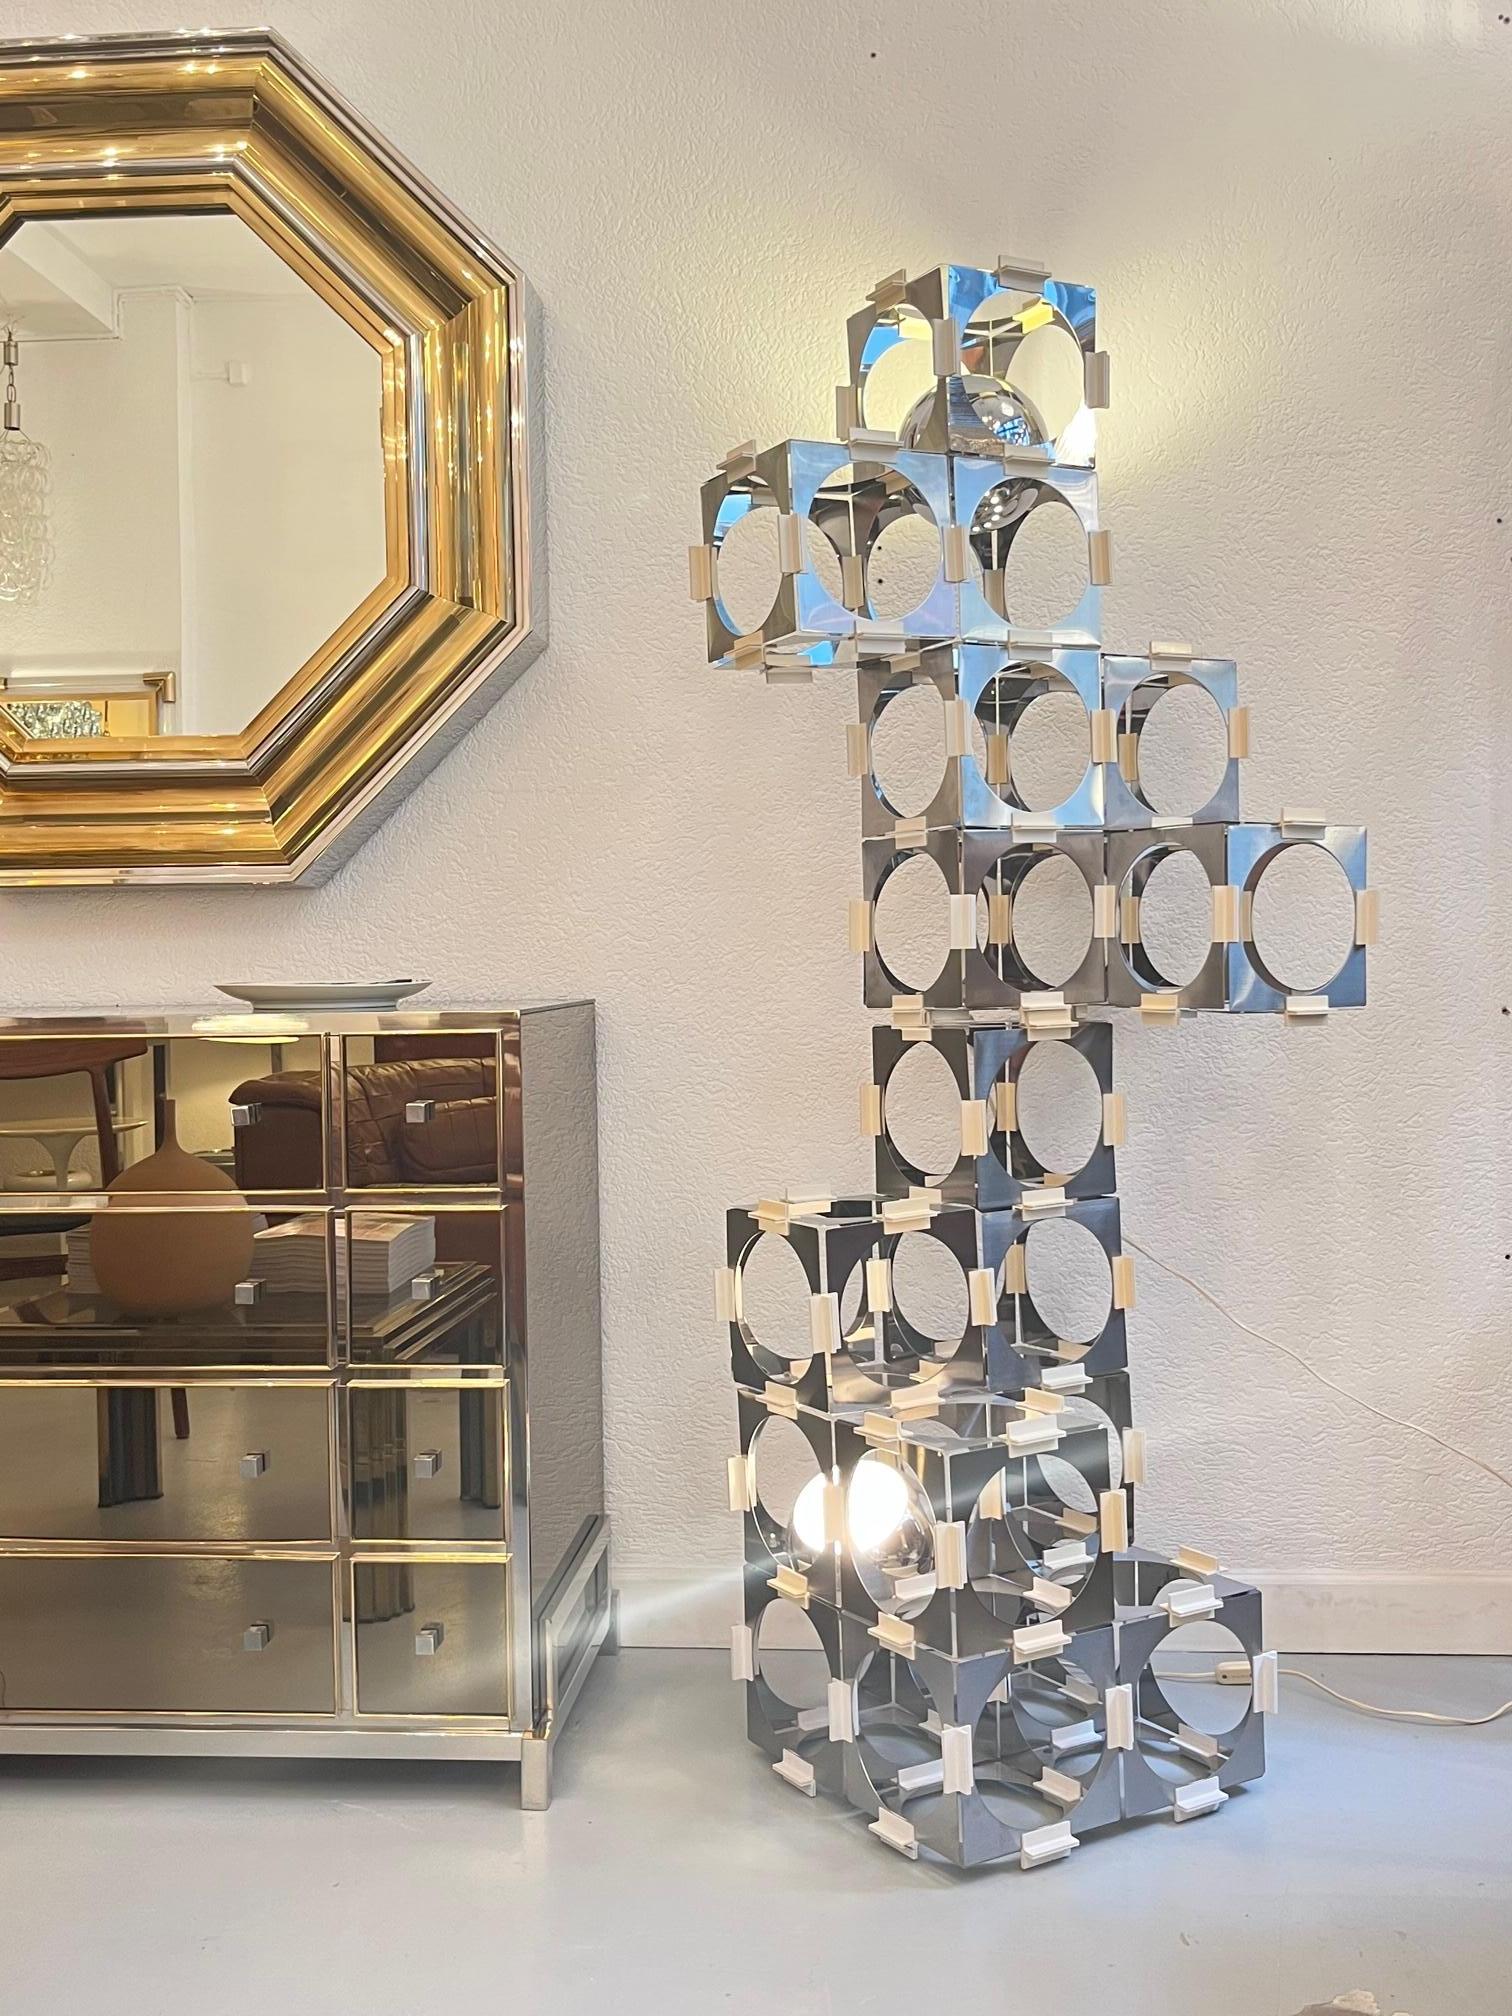 Seltene modulare Wolkenkratzer-Stehlampe aus Edelstahl und Kunststoff, hergestellt von Reggiani, entworfen von Luigi Argenta, Italien ca. 1970er Jahre
104 dünne Edelstahlplatten, eine Seite gebürstet, die andere poliert, die mit kleinen weißen